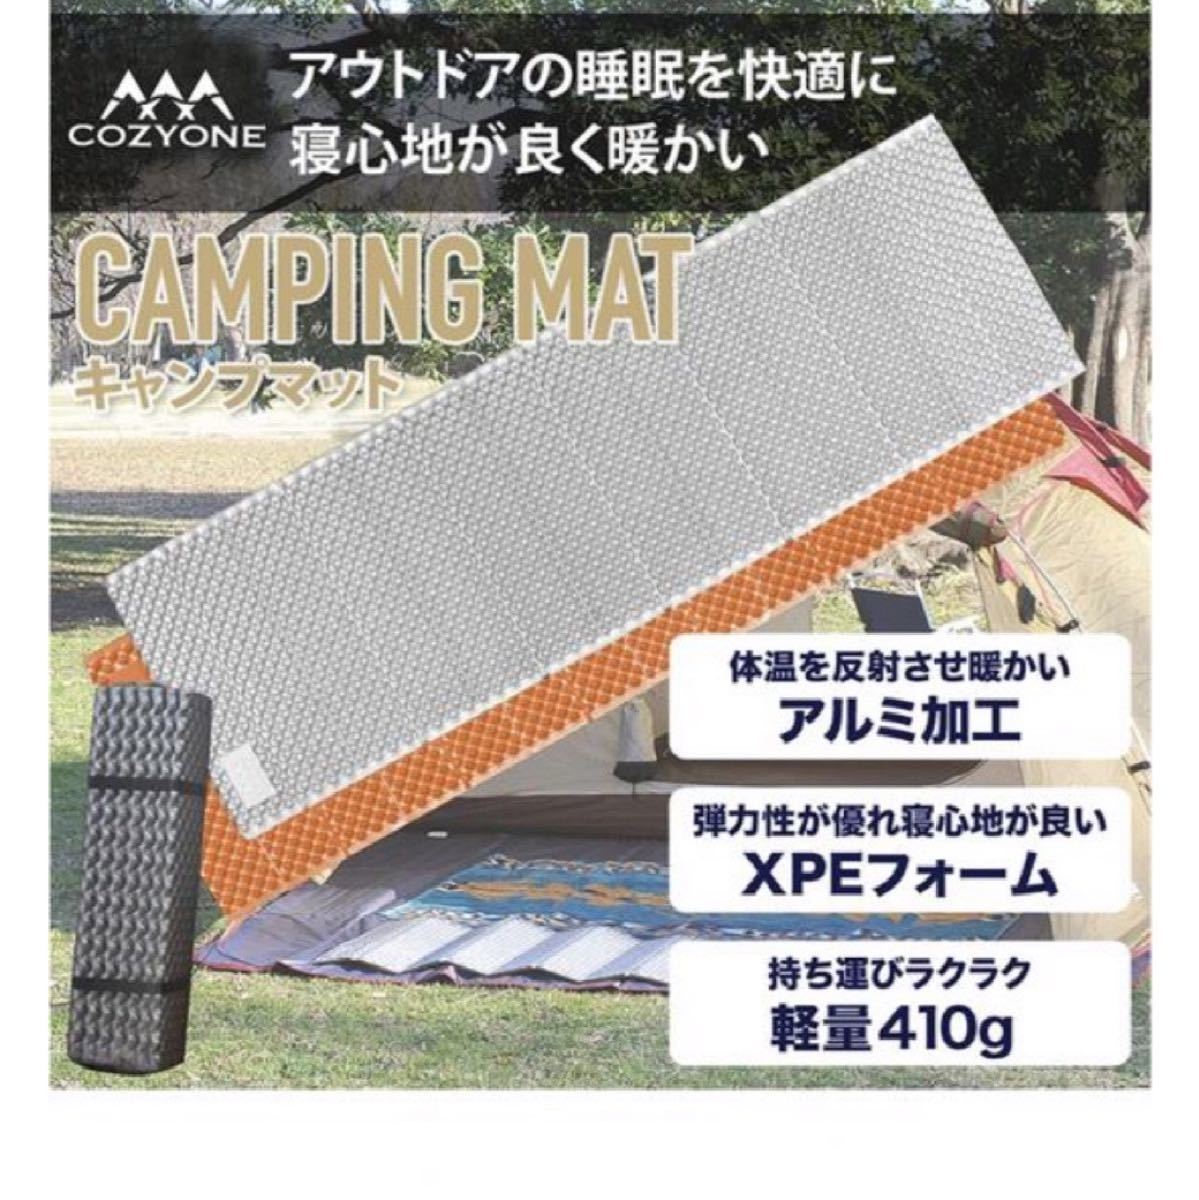 キャンプマット 寝袋用マット レジャー アウトドアマット IXPE素材 レジャーシート テント泊 超軽量 保温 寝袋用